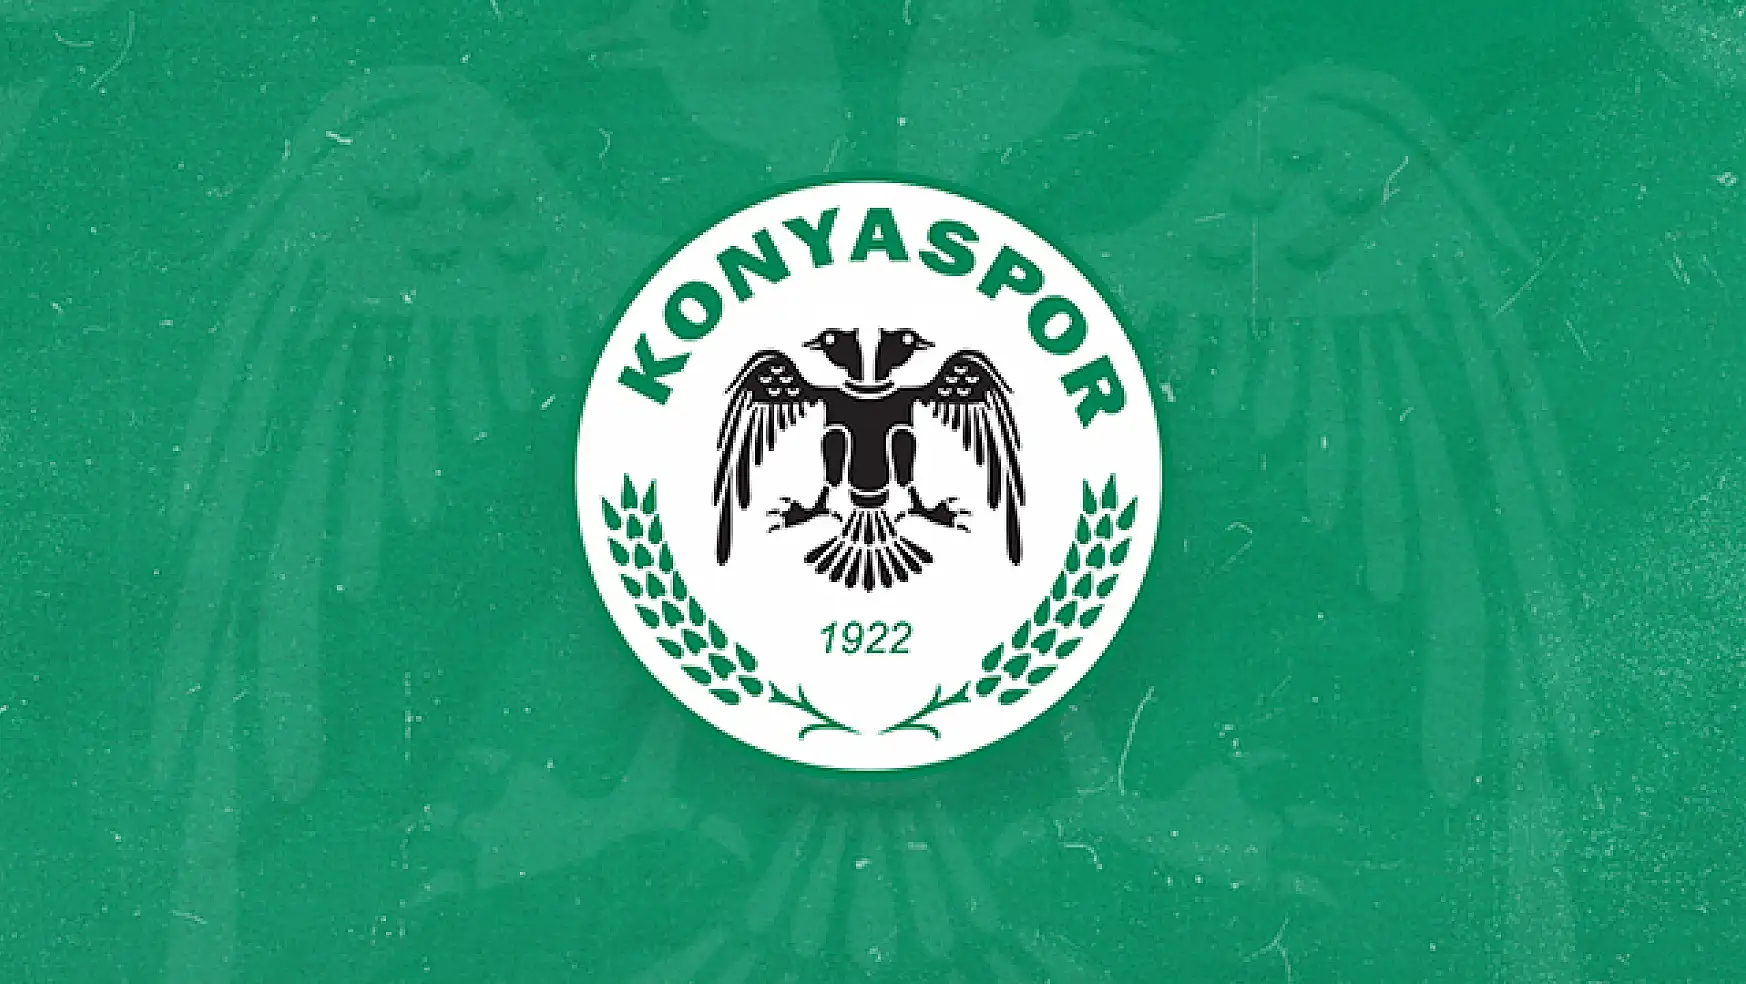 Son Dakika: Konyaspor'dan açıklama geldi